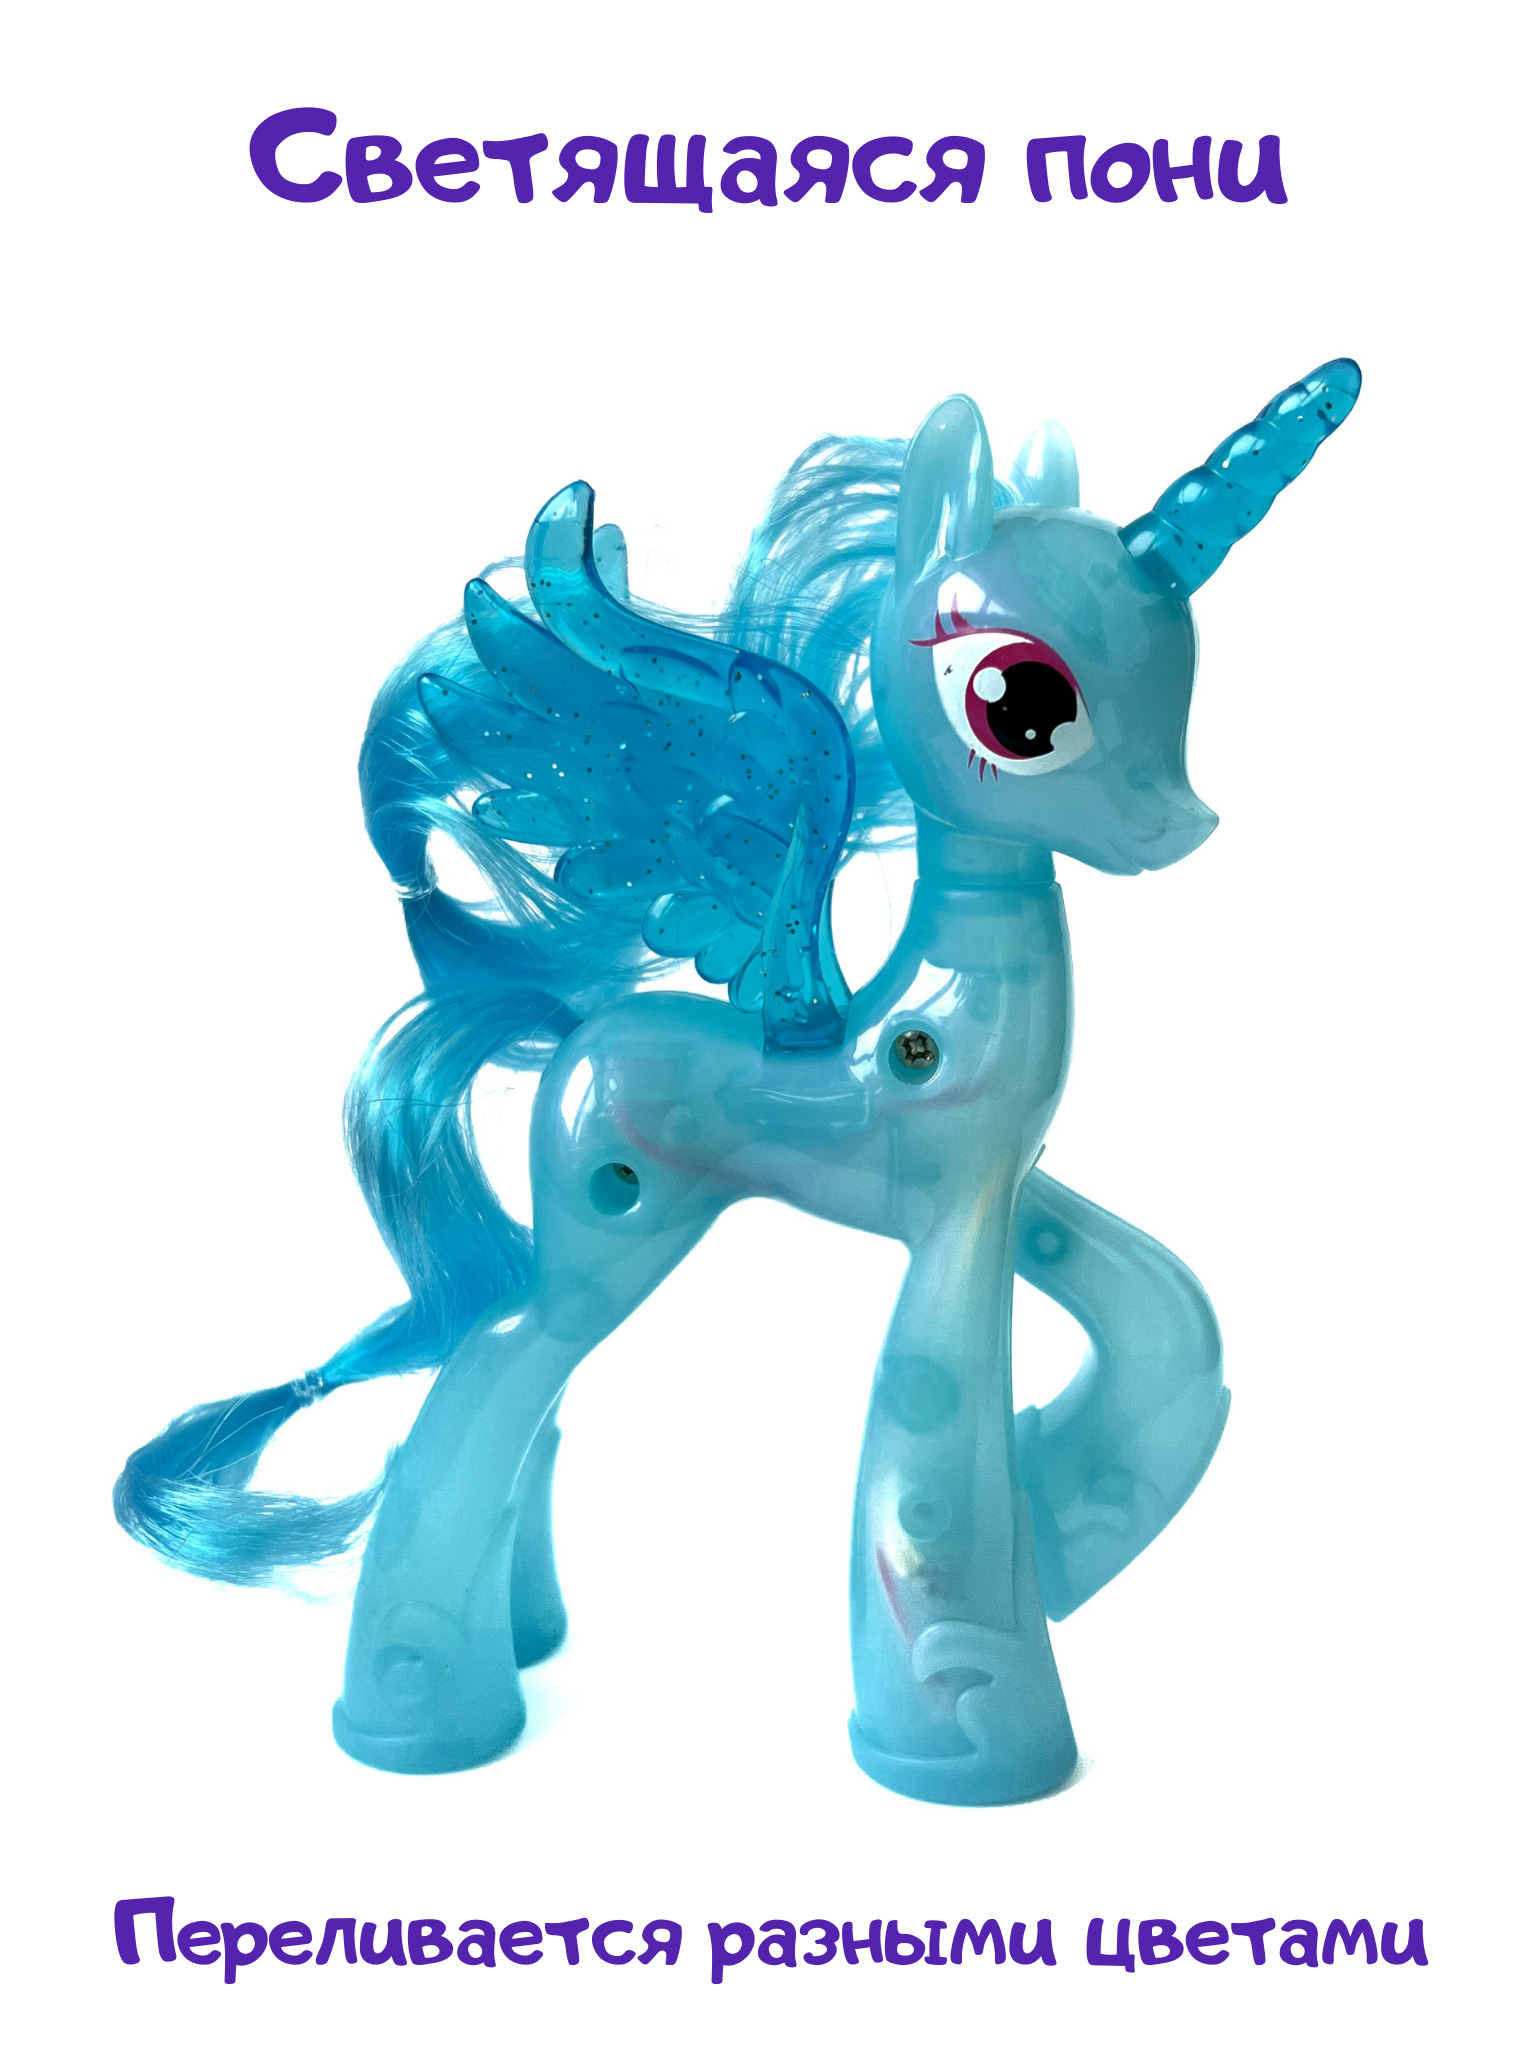 Светящихся пони. Светящаяся пони игрушка. My little Pony светящиеся игрушки. Голубая пони игрушка. Пони светящаяся пони светящаяся.